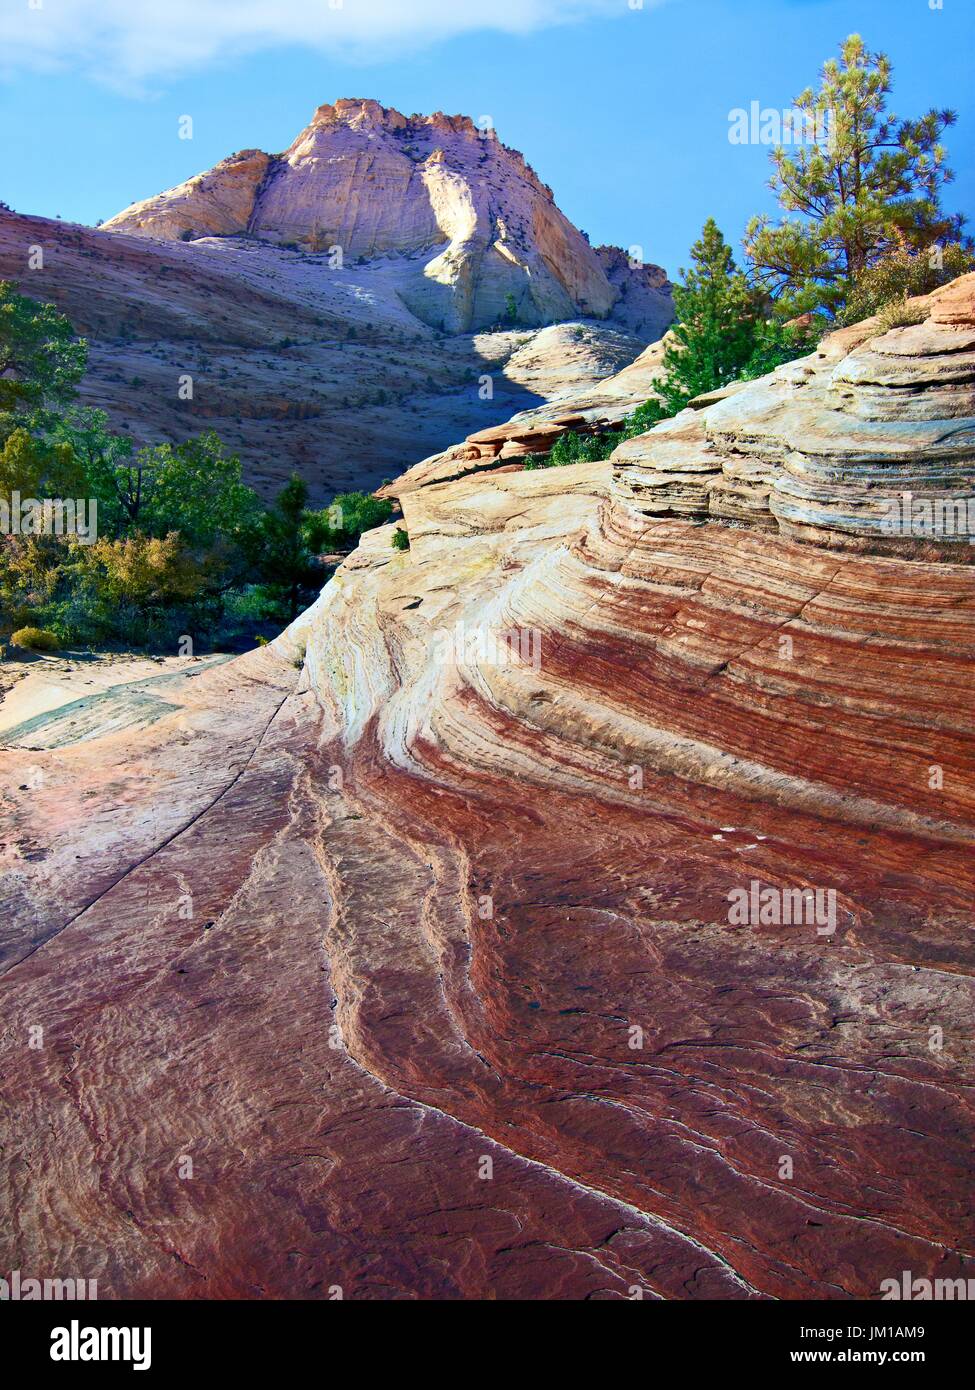 Una vista del paisaje montañoso del parque nacional de Zion, Utah, EE.UU. Foto de stock